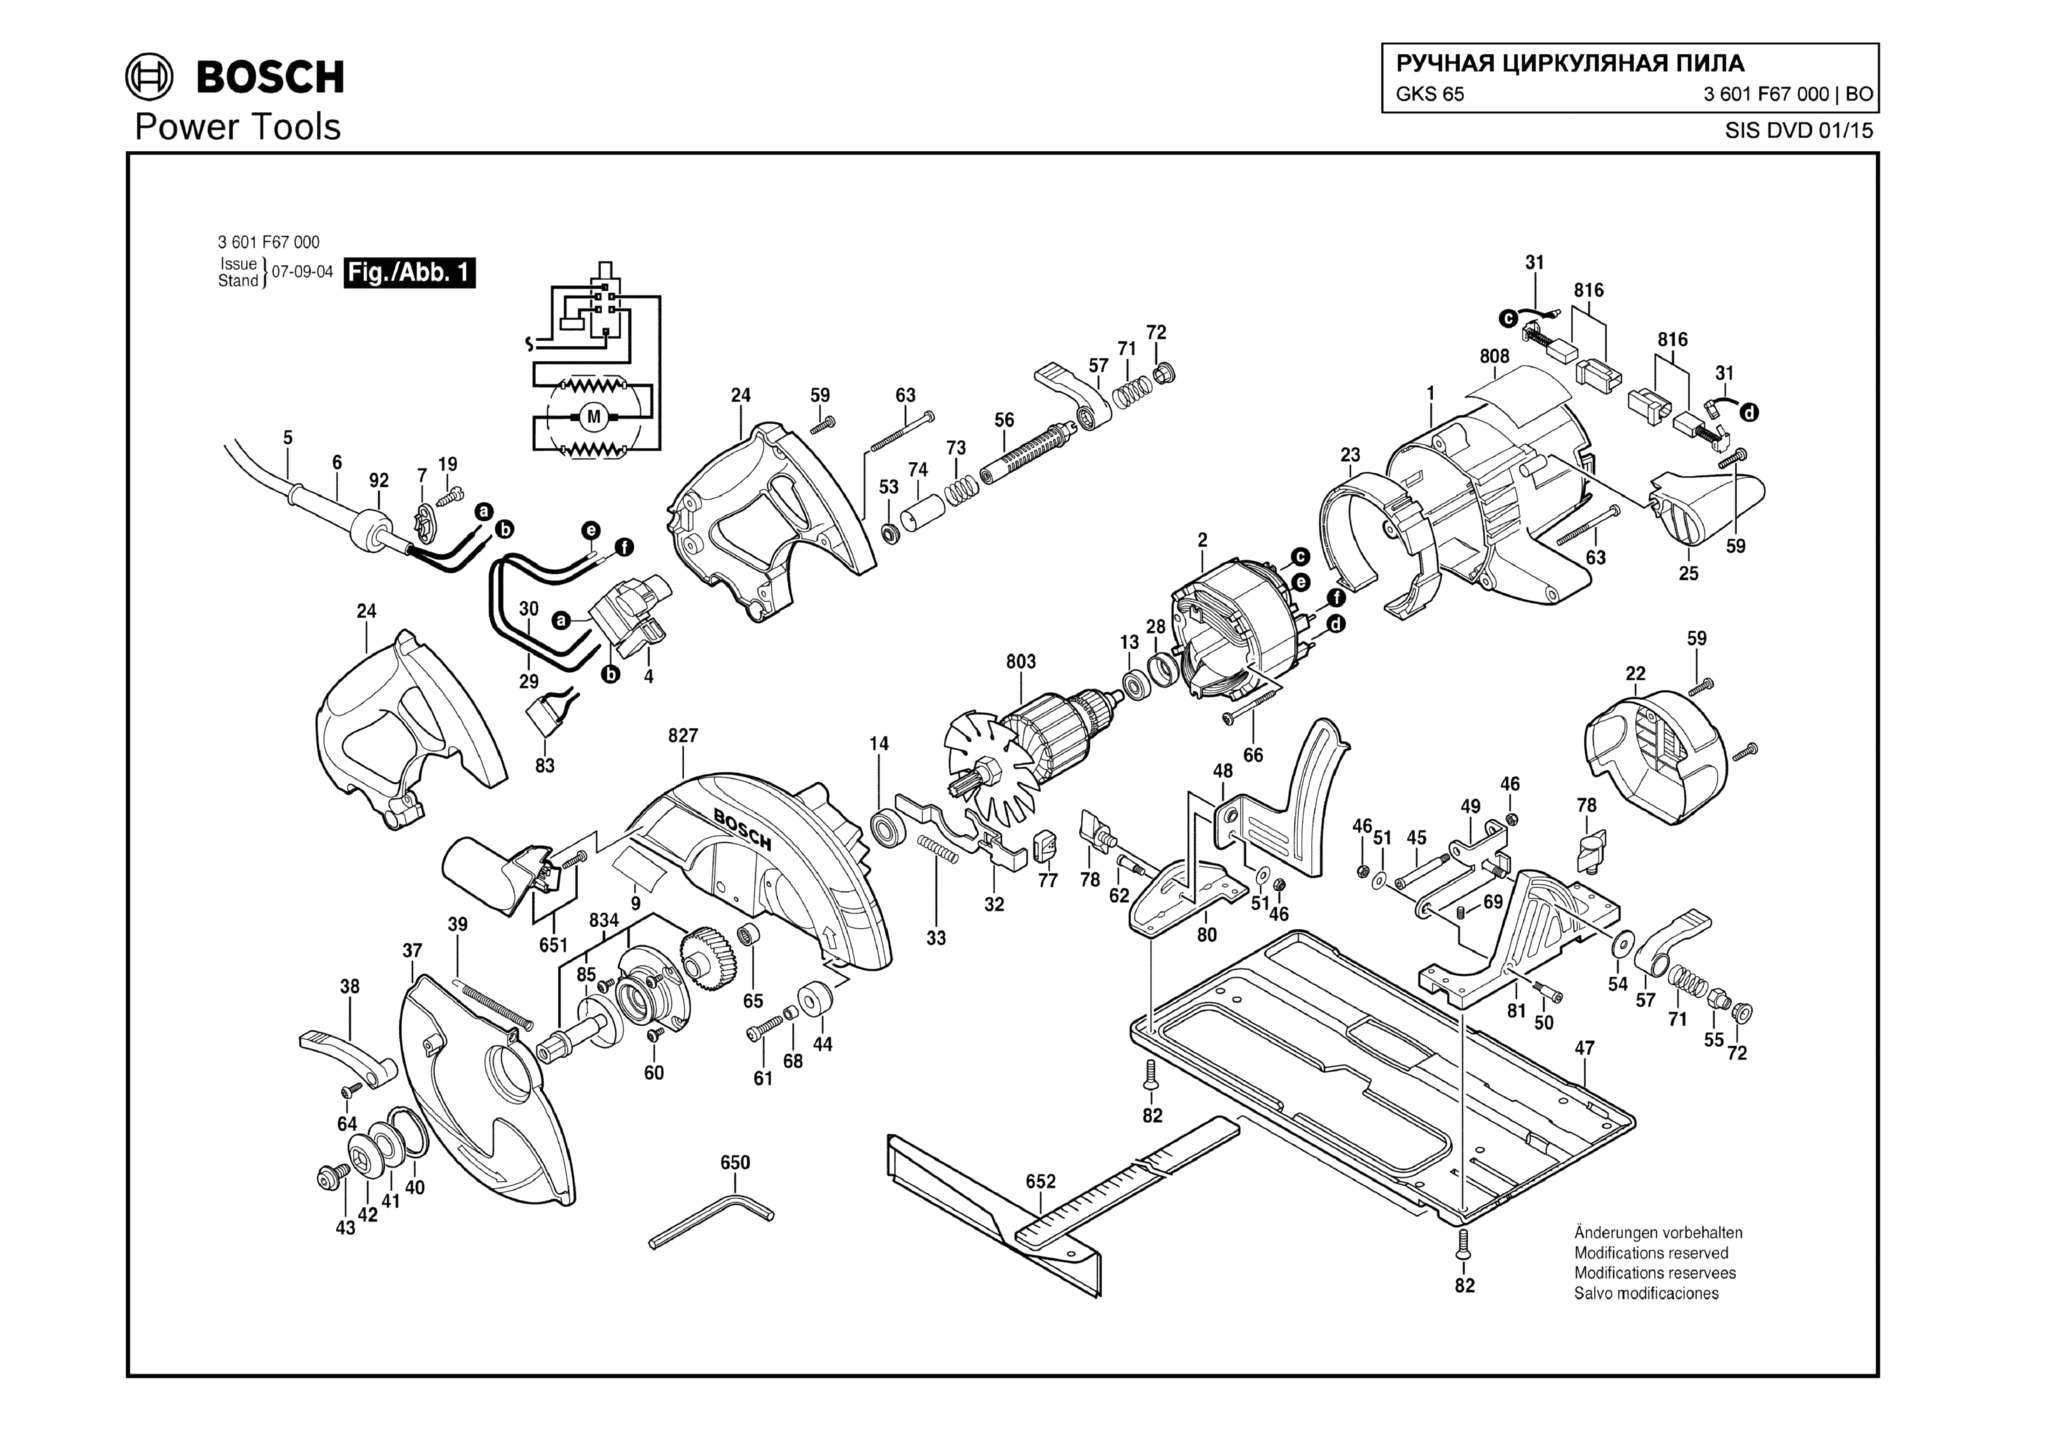 Запчасти, схема и деталировка Bosch GKS 65 (ТИП 3601F67000)